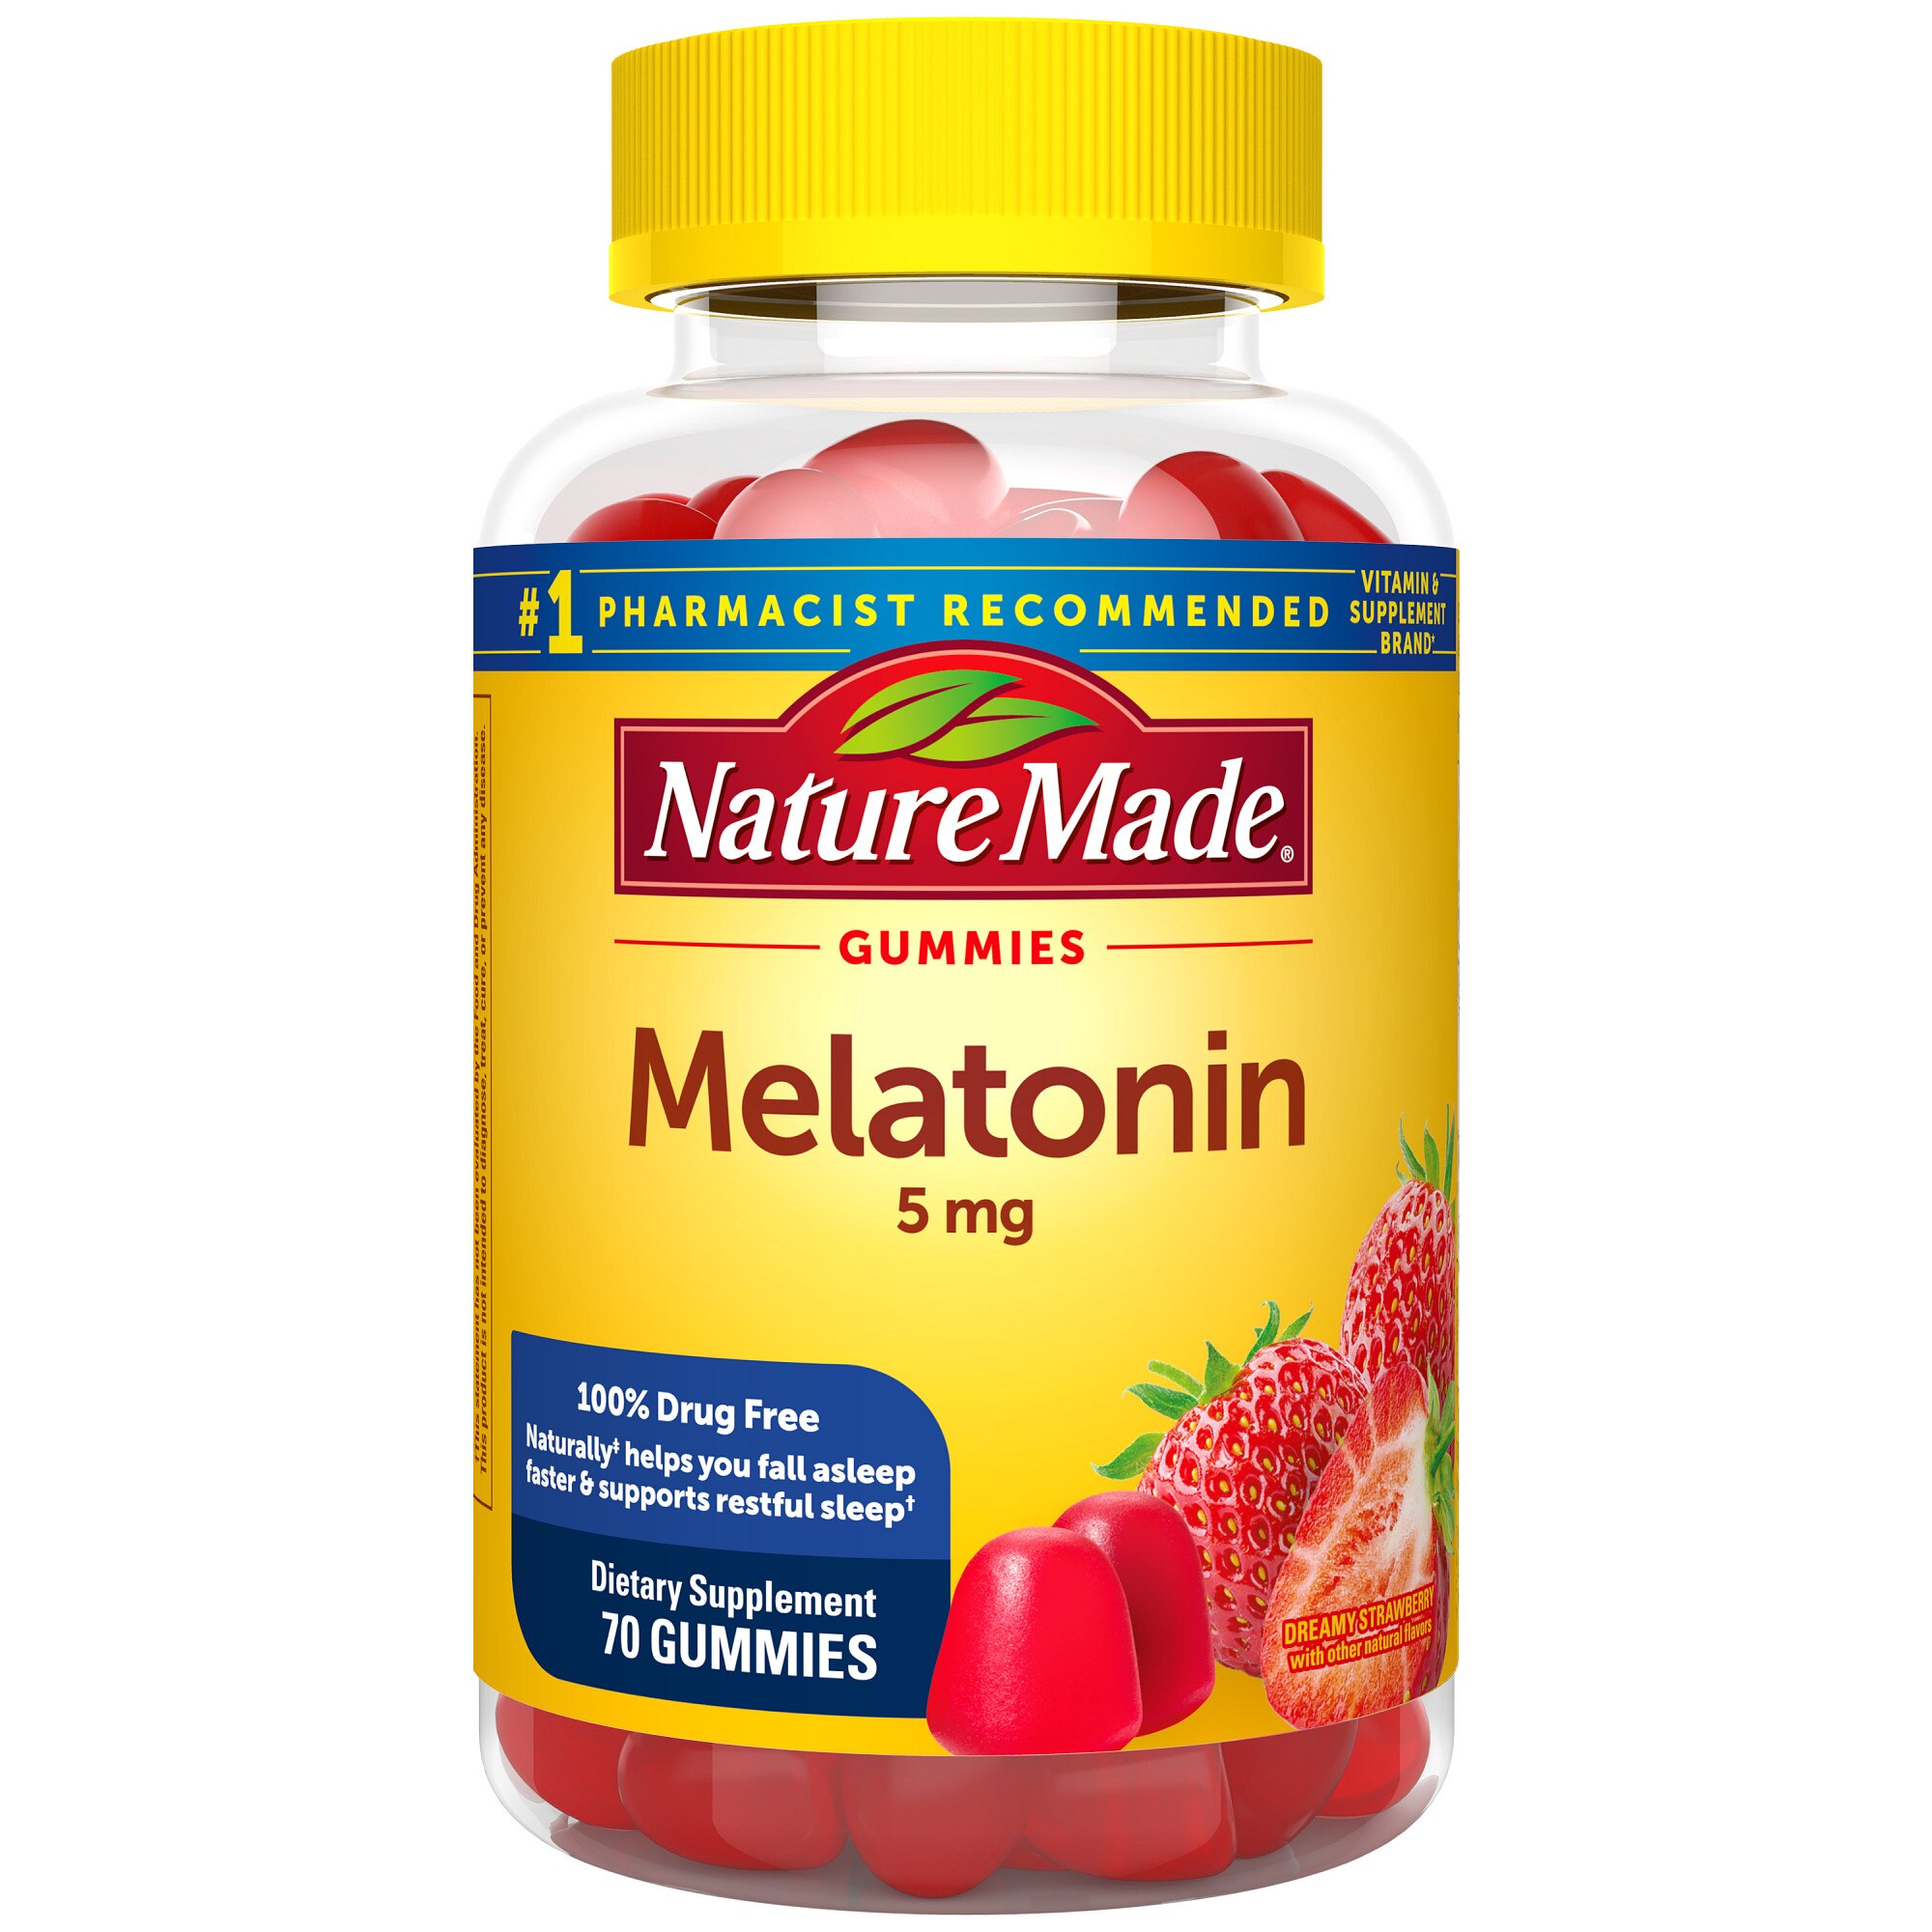 Nature Made Melatonin 5 mg Gummies, 70 CT